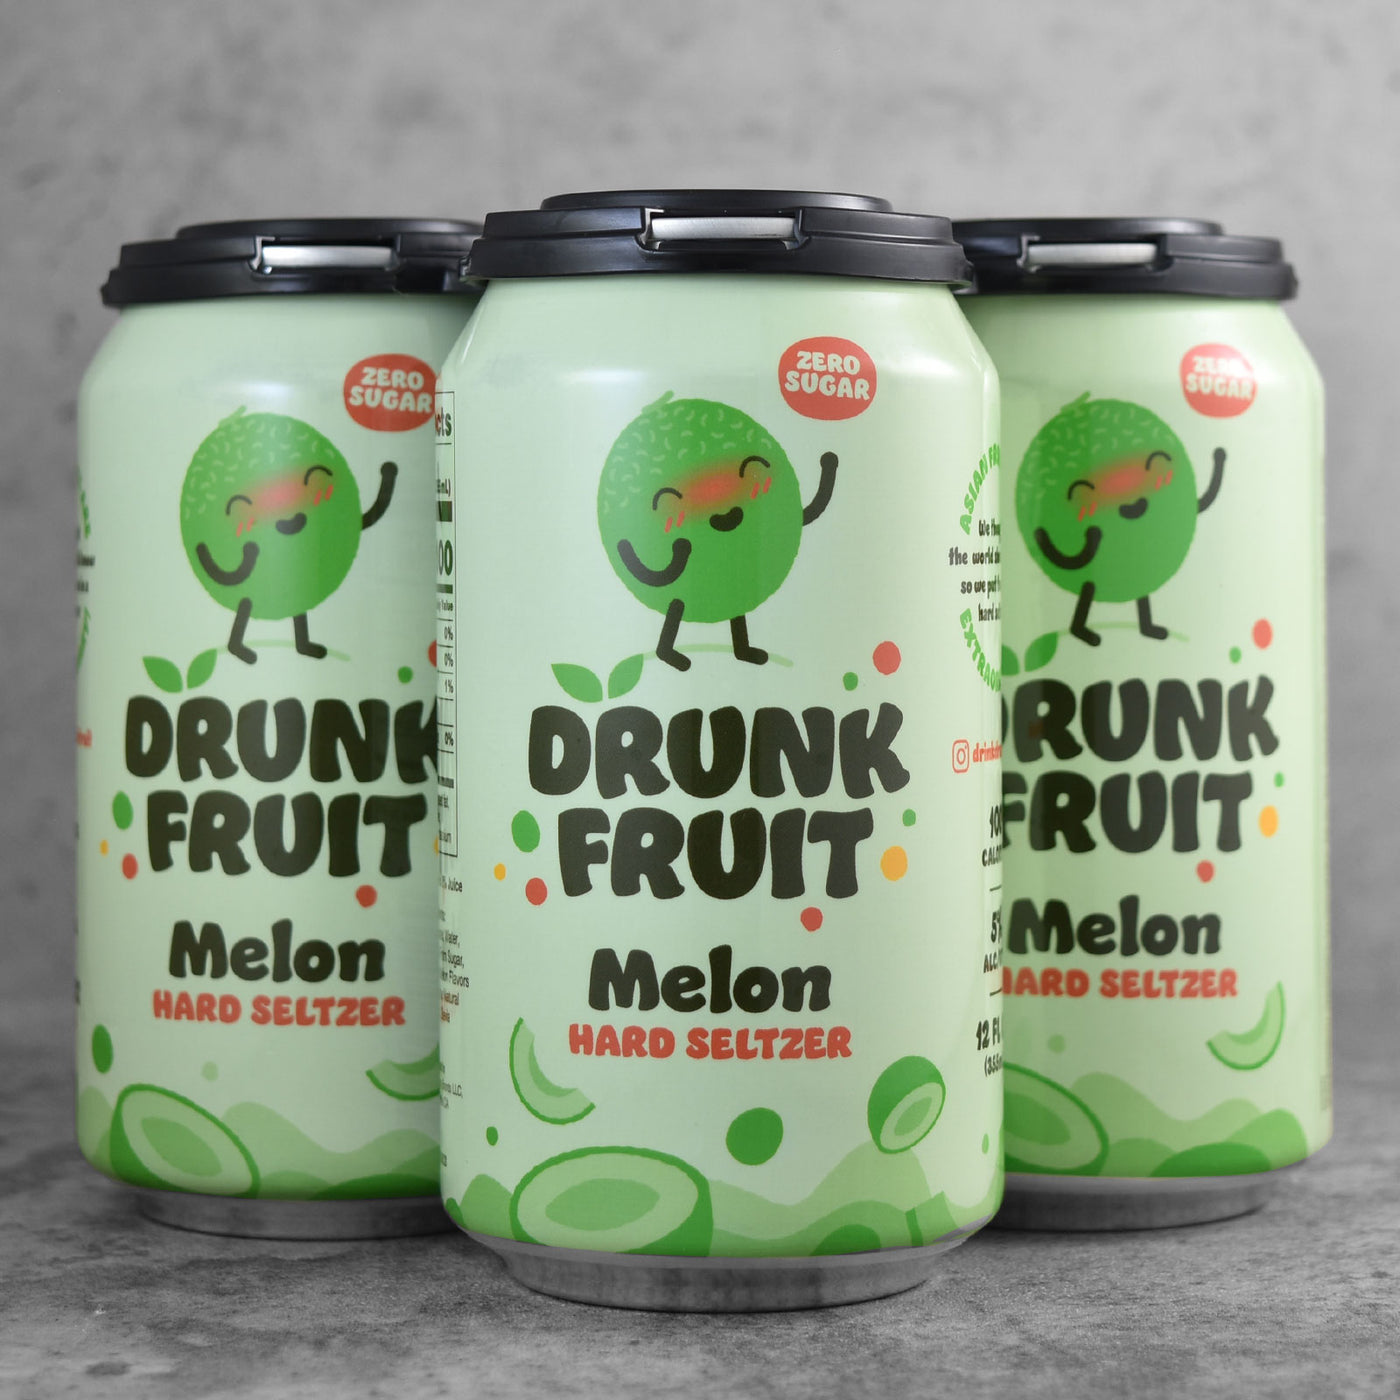 Drunk Fruit Melon Hard Seltzer